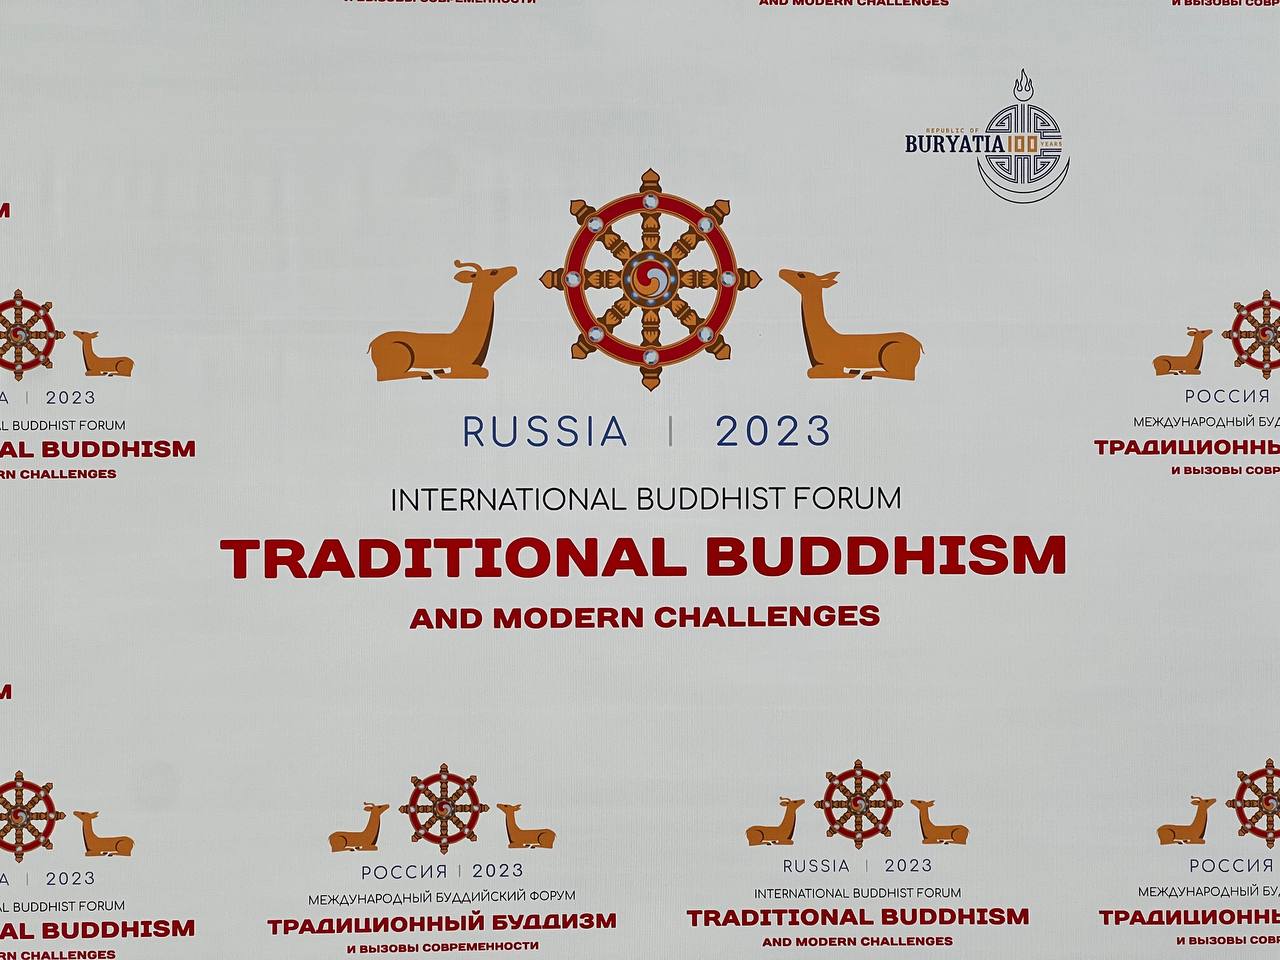 В Бурятии подвели общие итоги проведения Международного буддийского форума